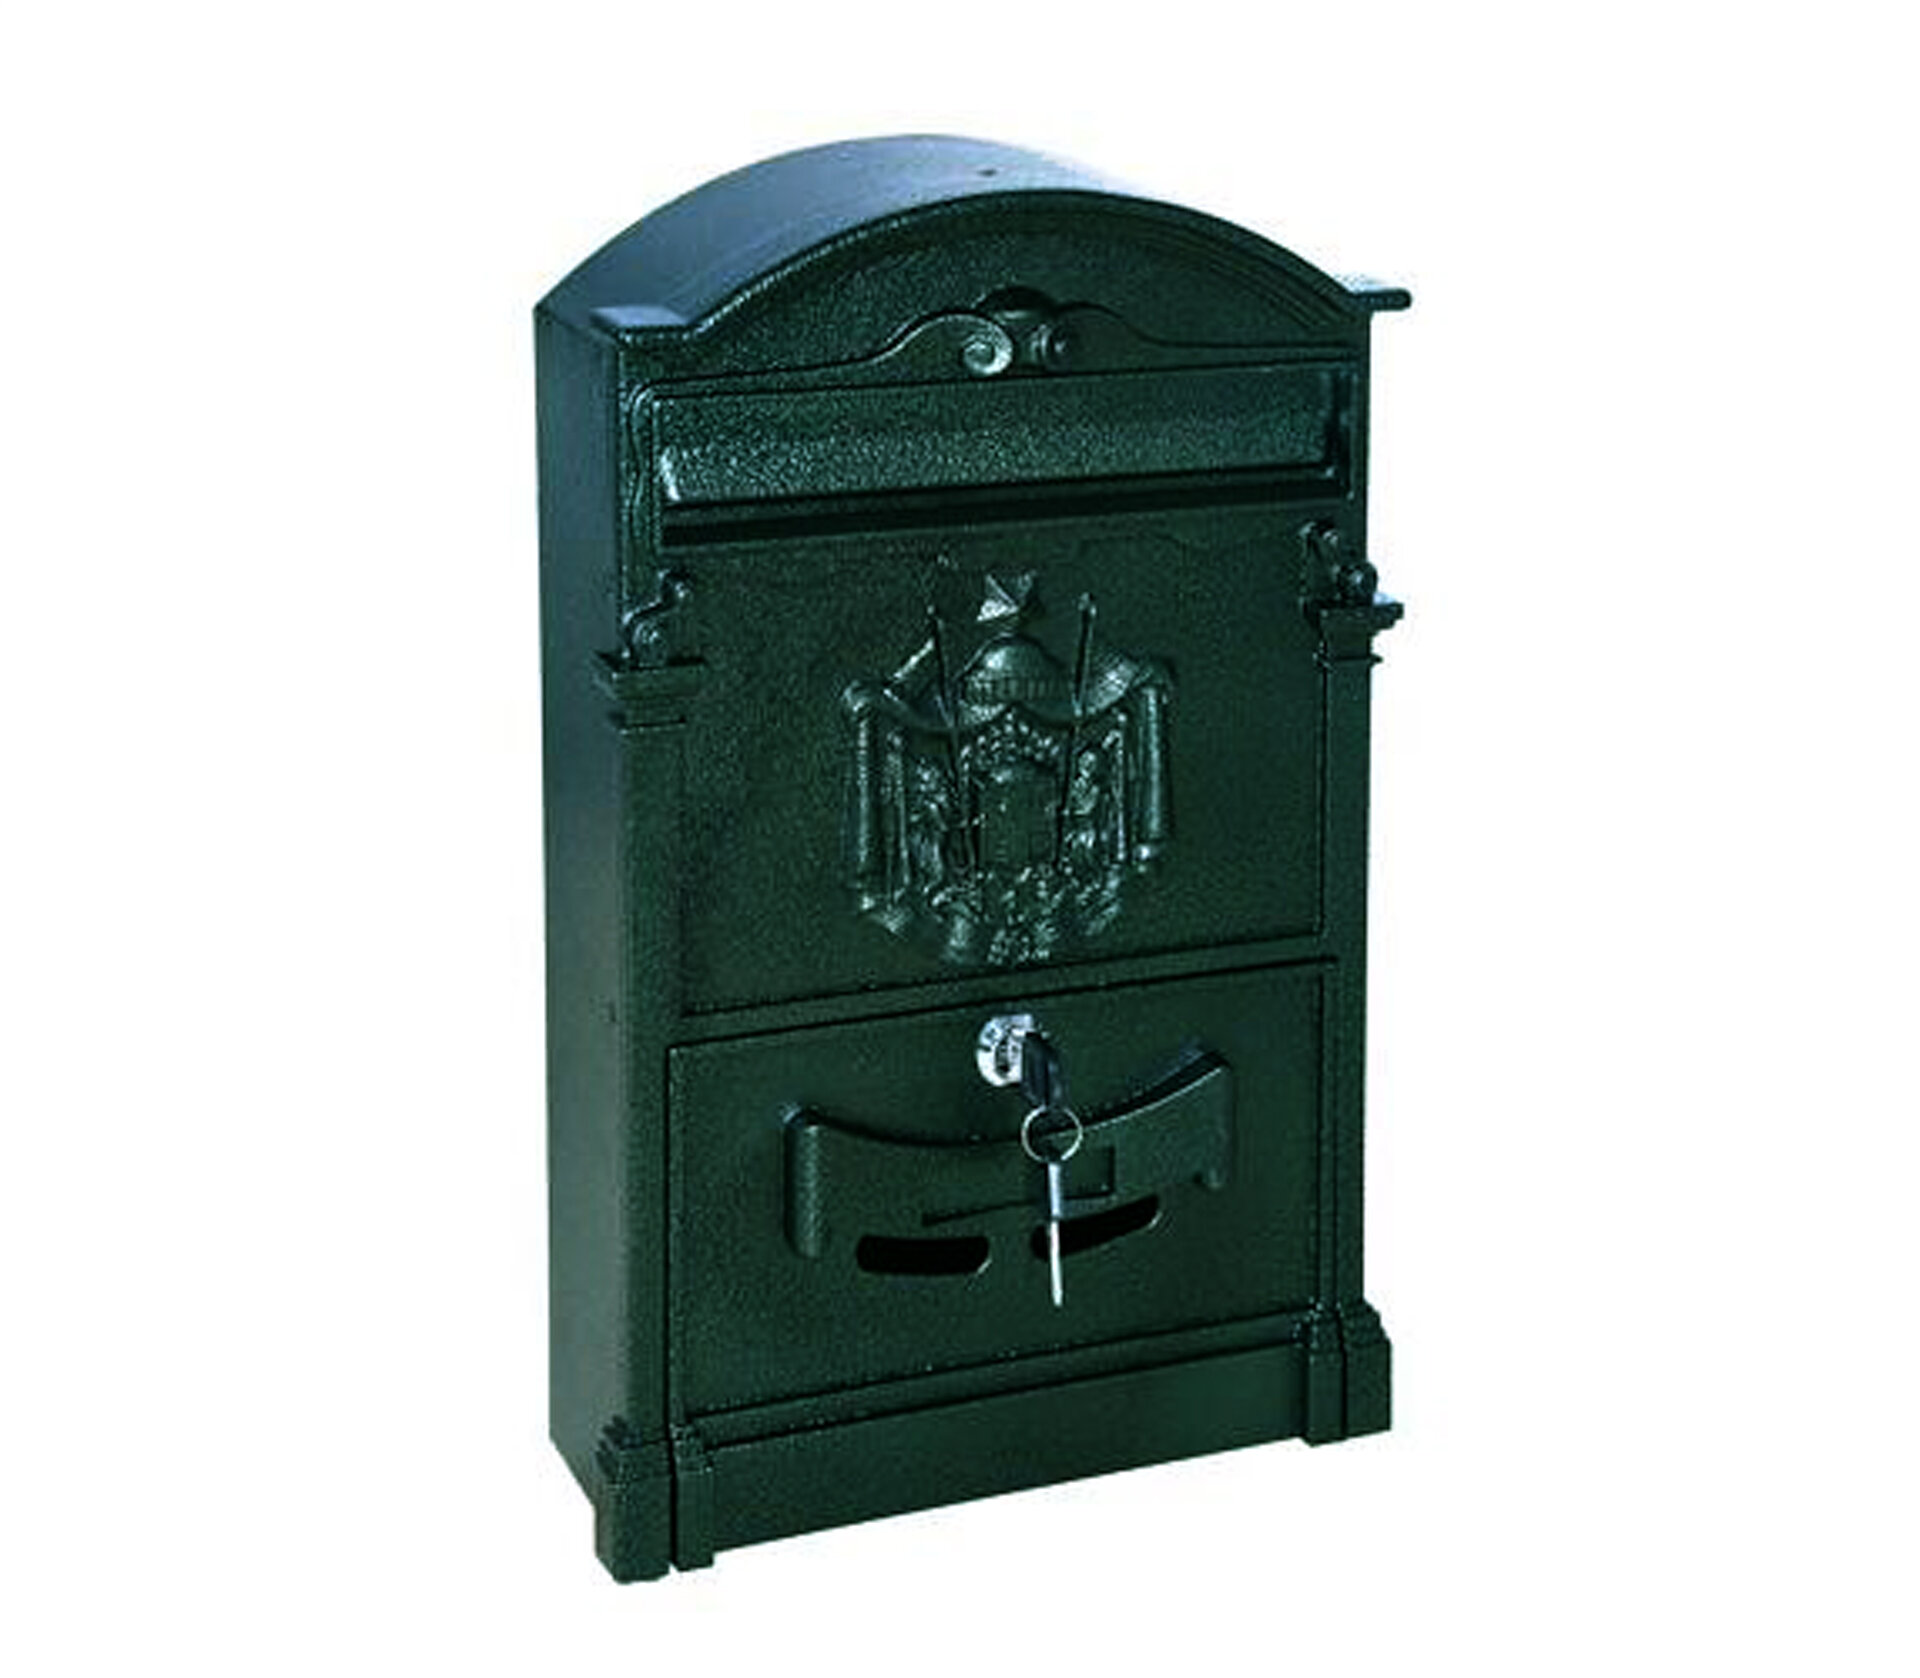 Почтовый ящик уличный металлический цвет синий. Ящик для почты с дизайном под старину с гербом.